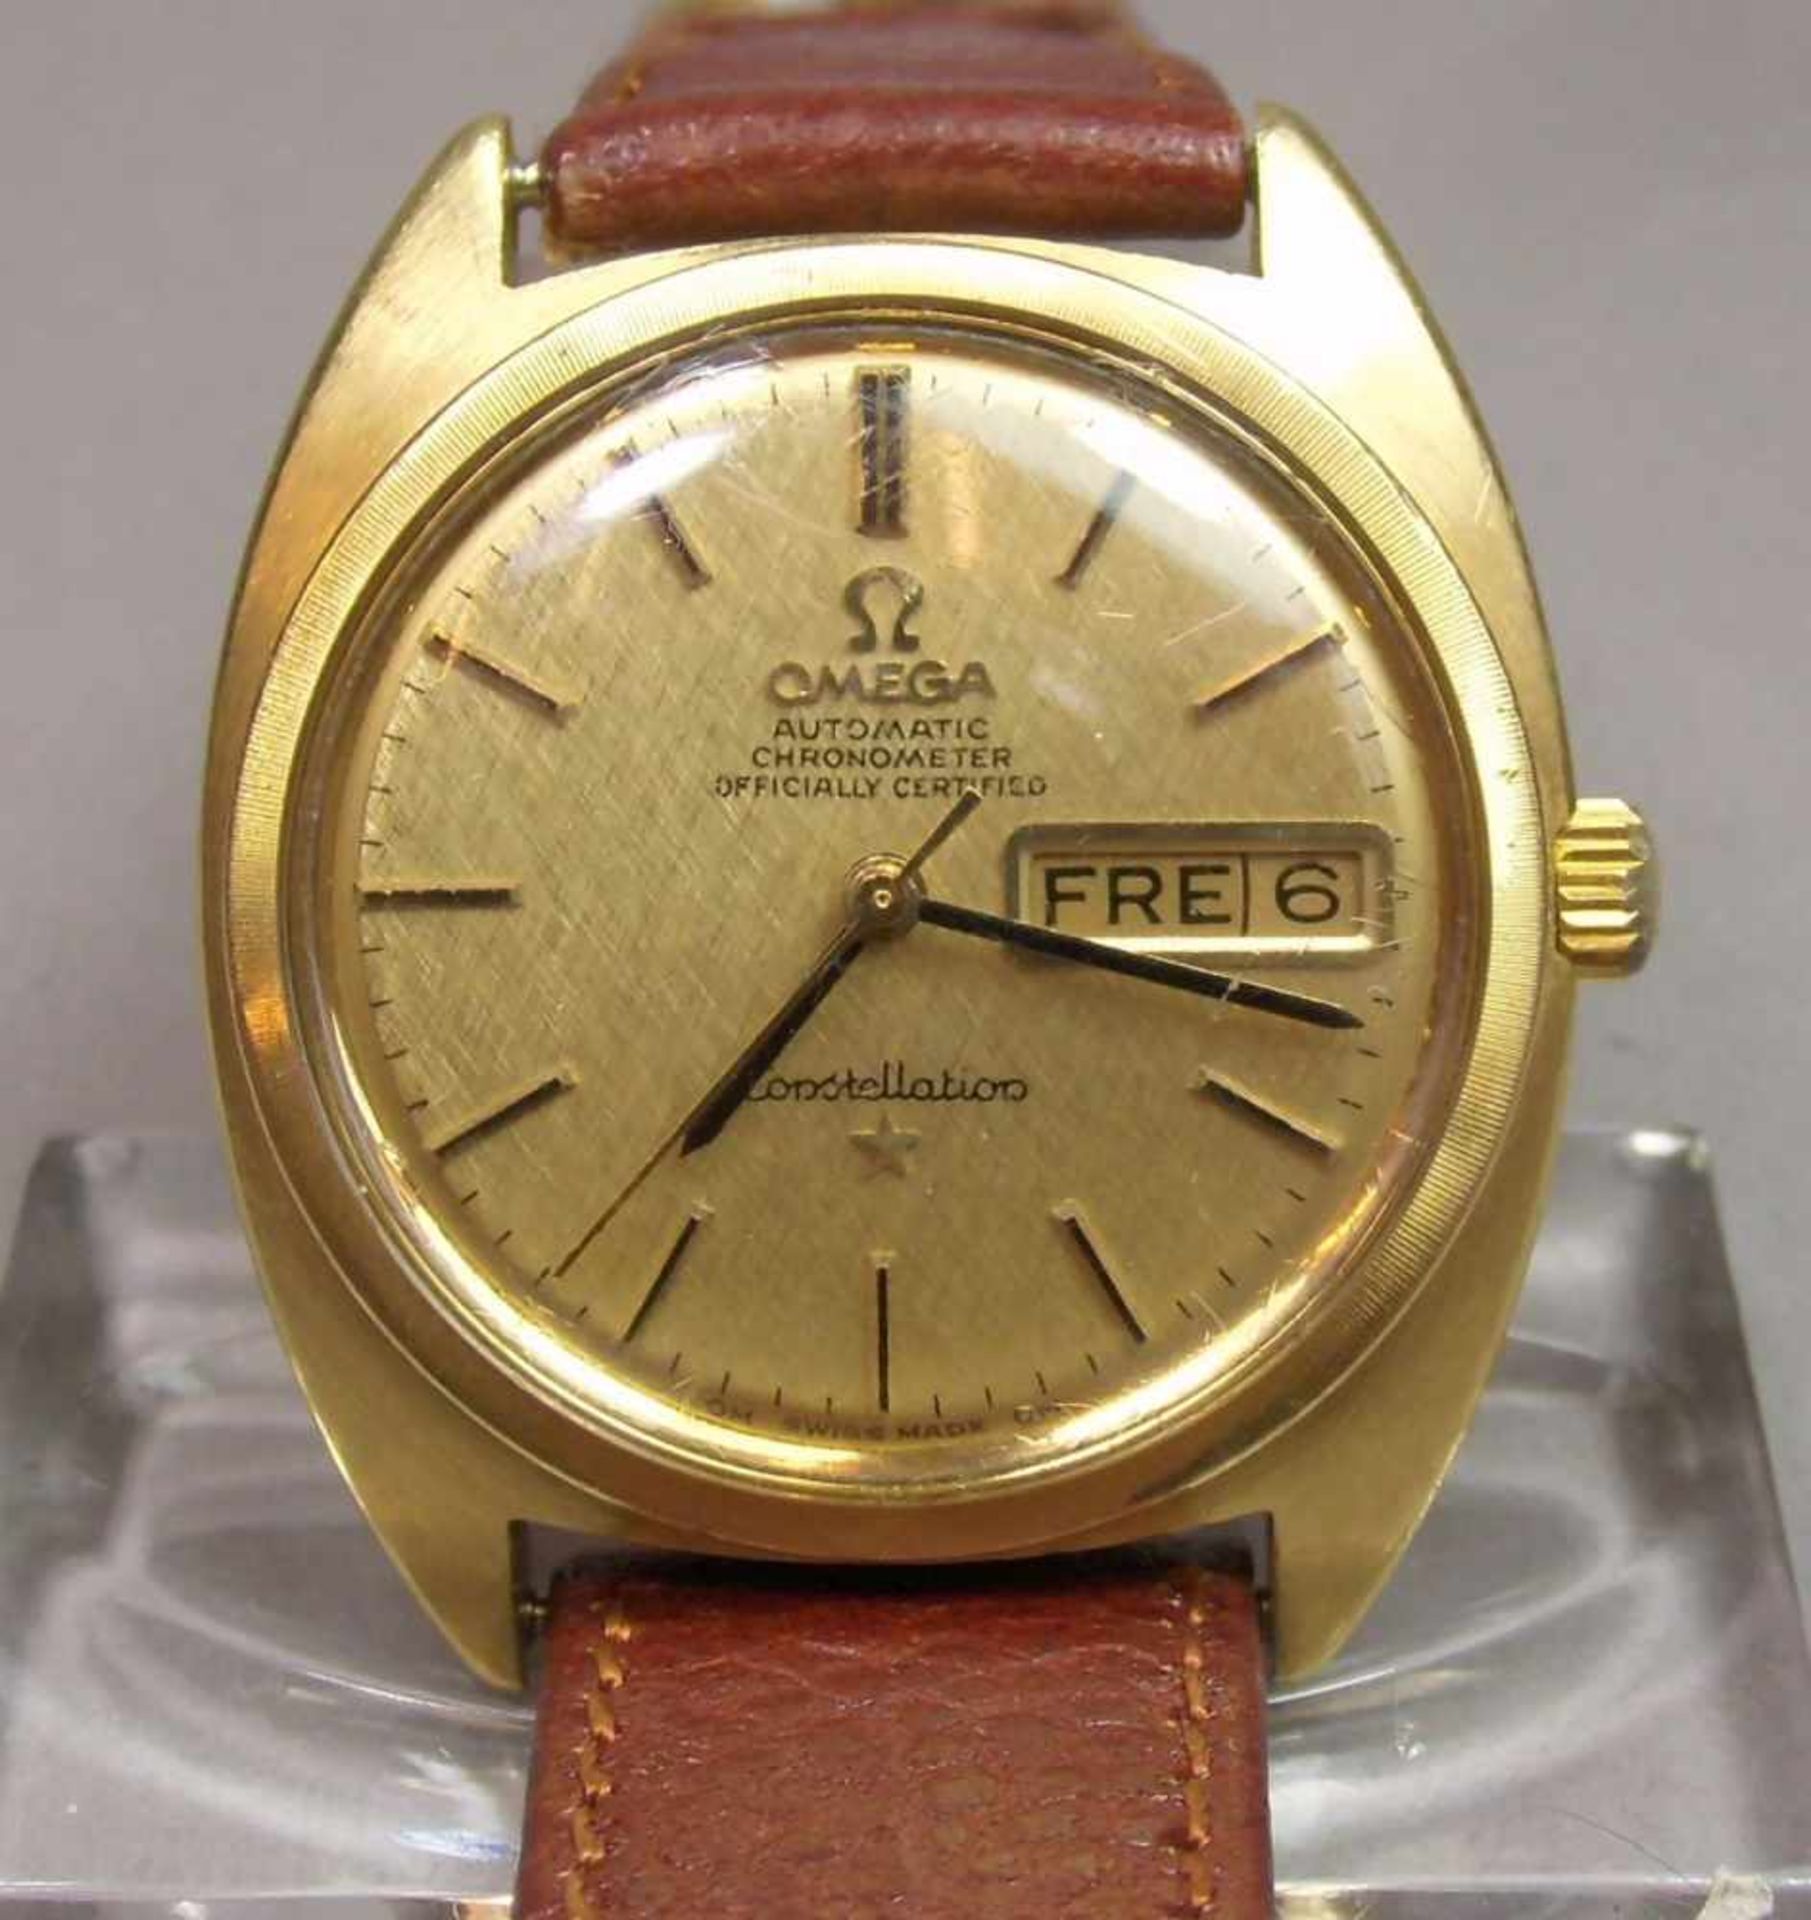 VINTAGE ARMBANDUHR: OMEGA CONSTELLATION / wristwatch, Herstellungsjahr 1968, Automatik-Uhr,